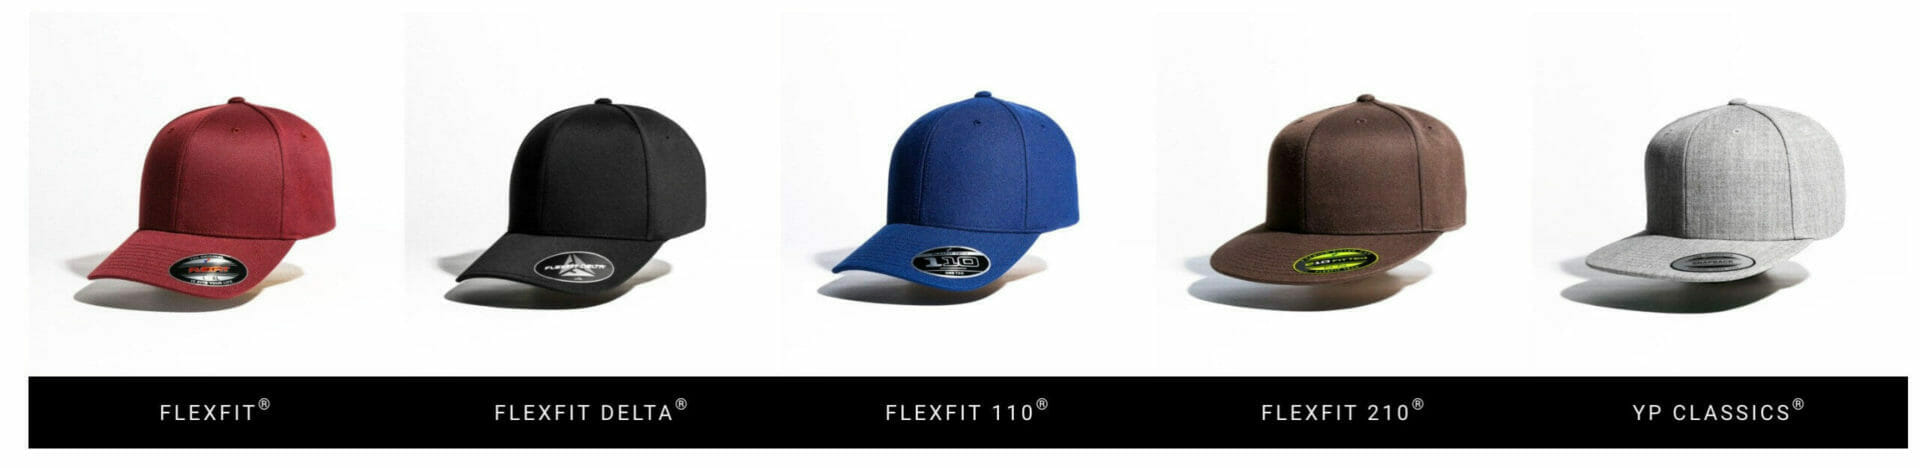 flexfit hat companies